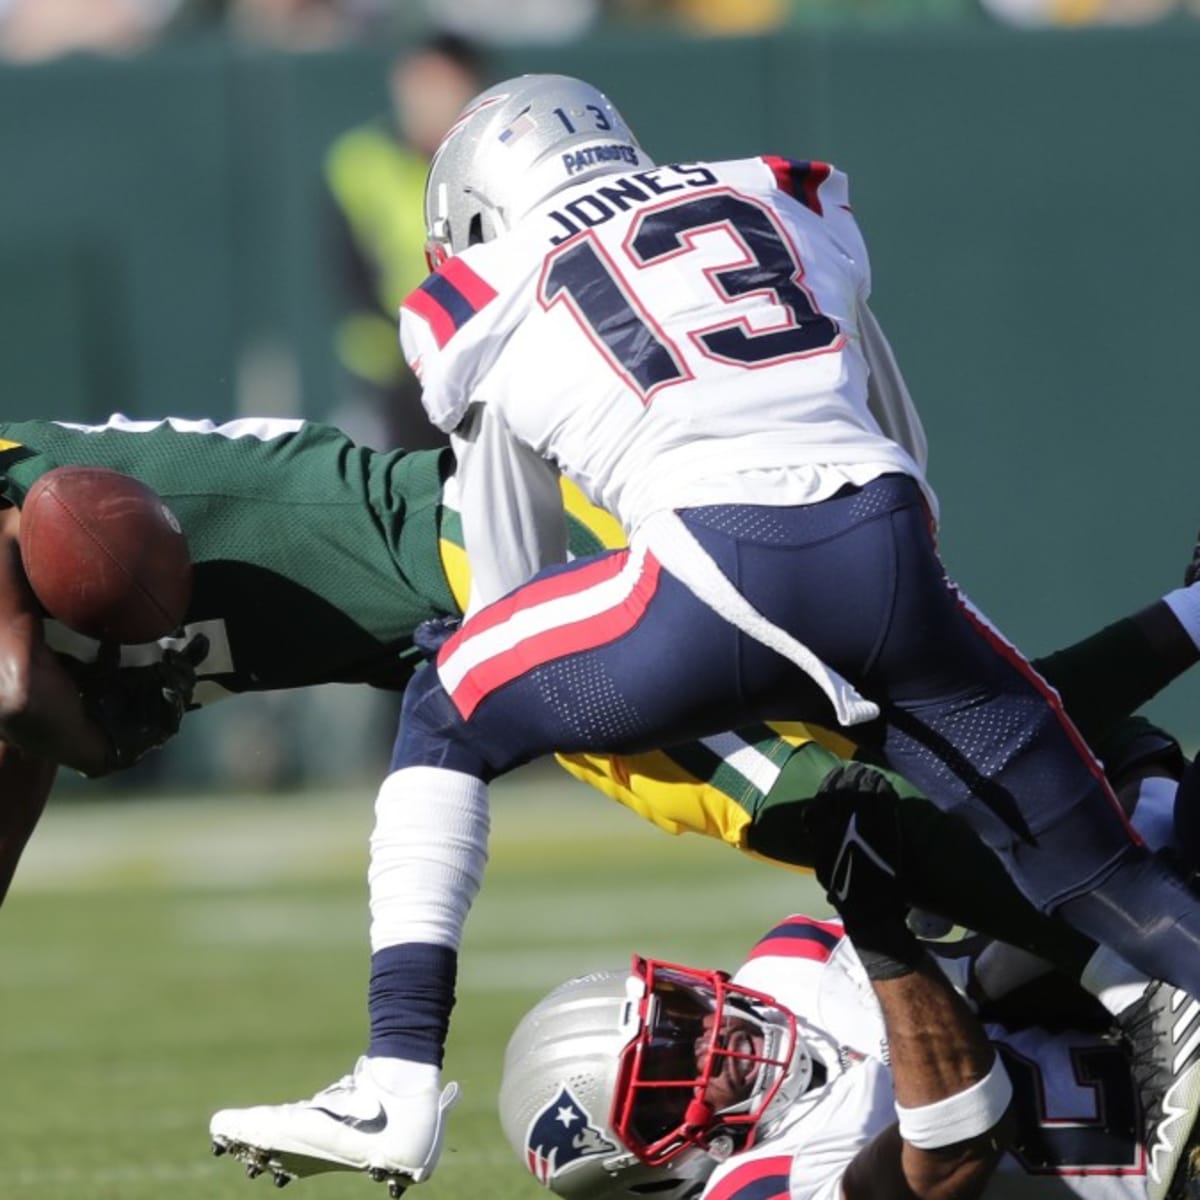 Patriots vs Packers recap and final score: New England defeats